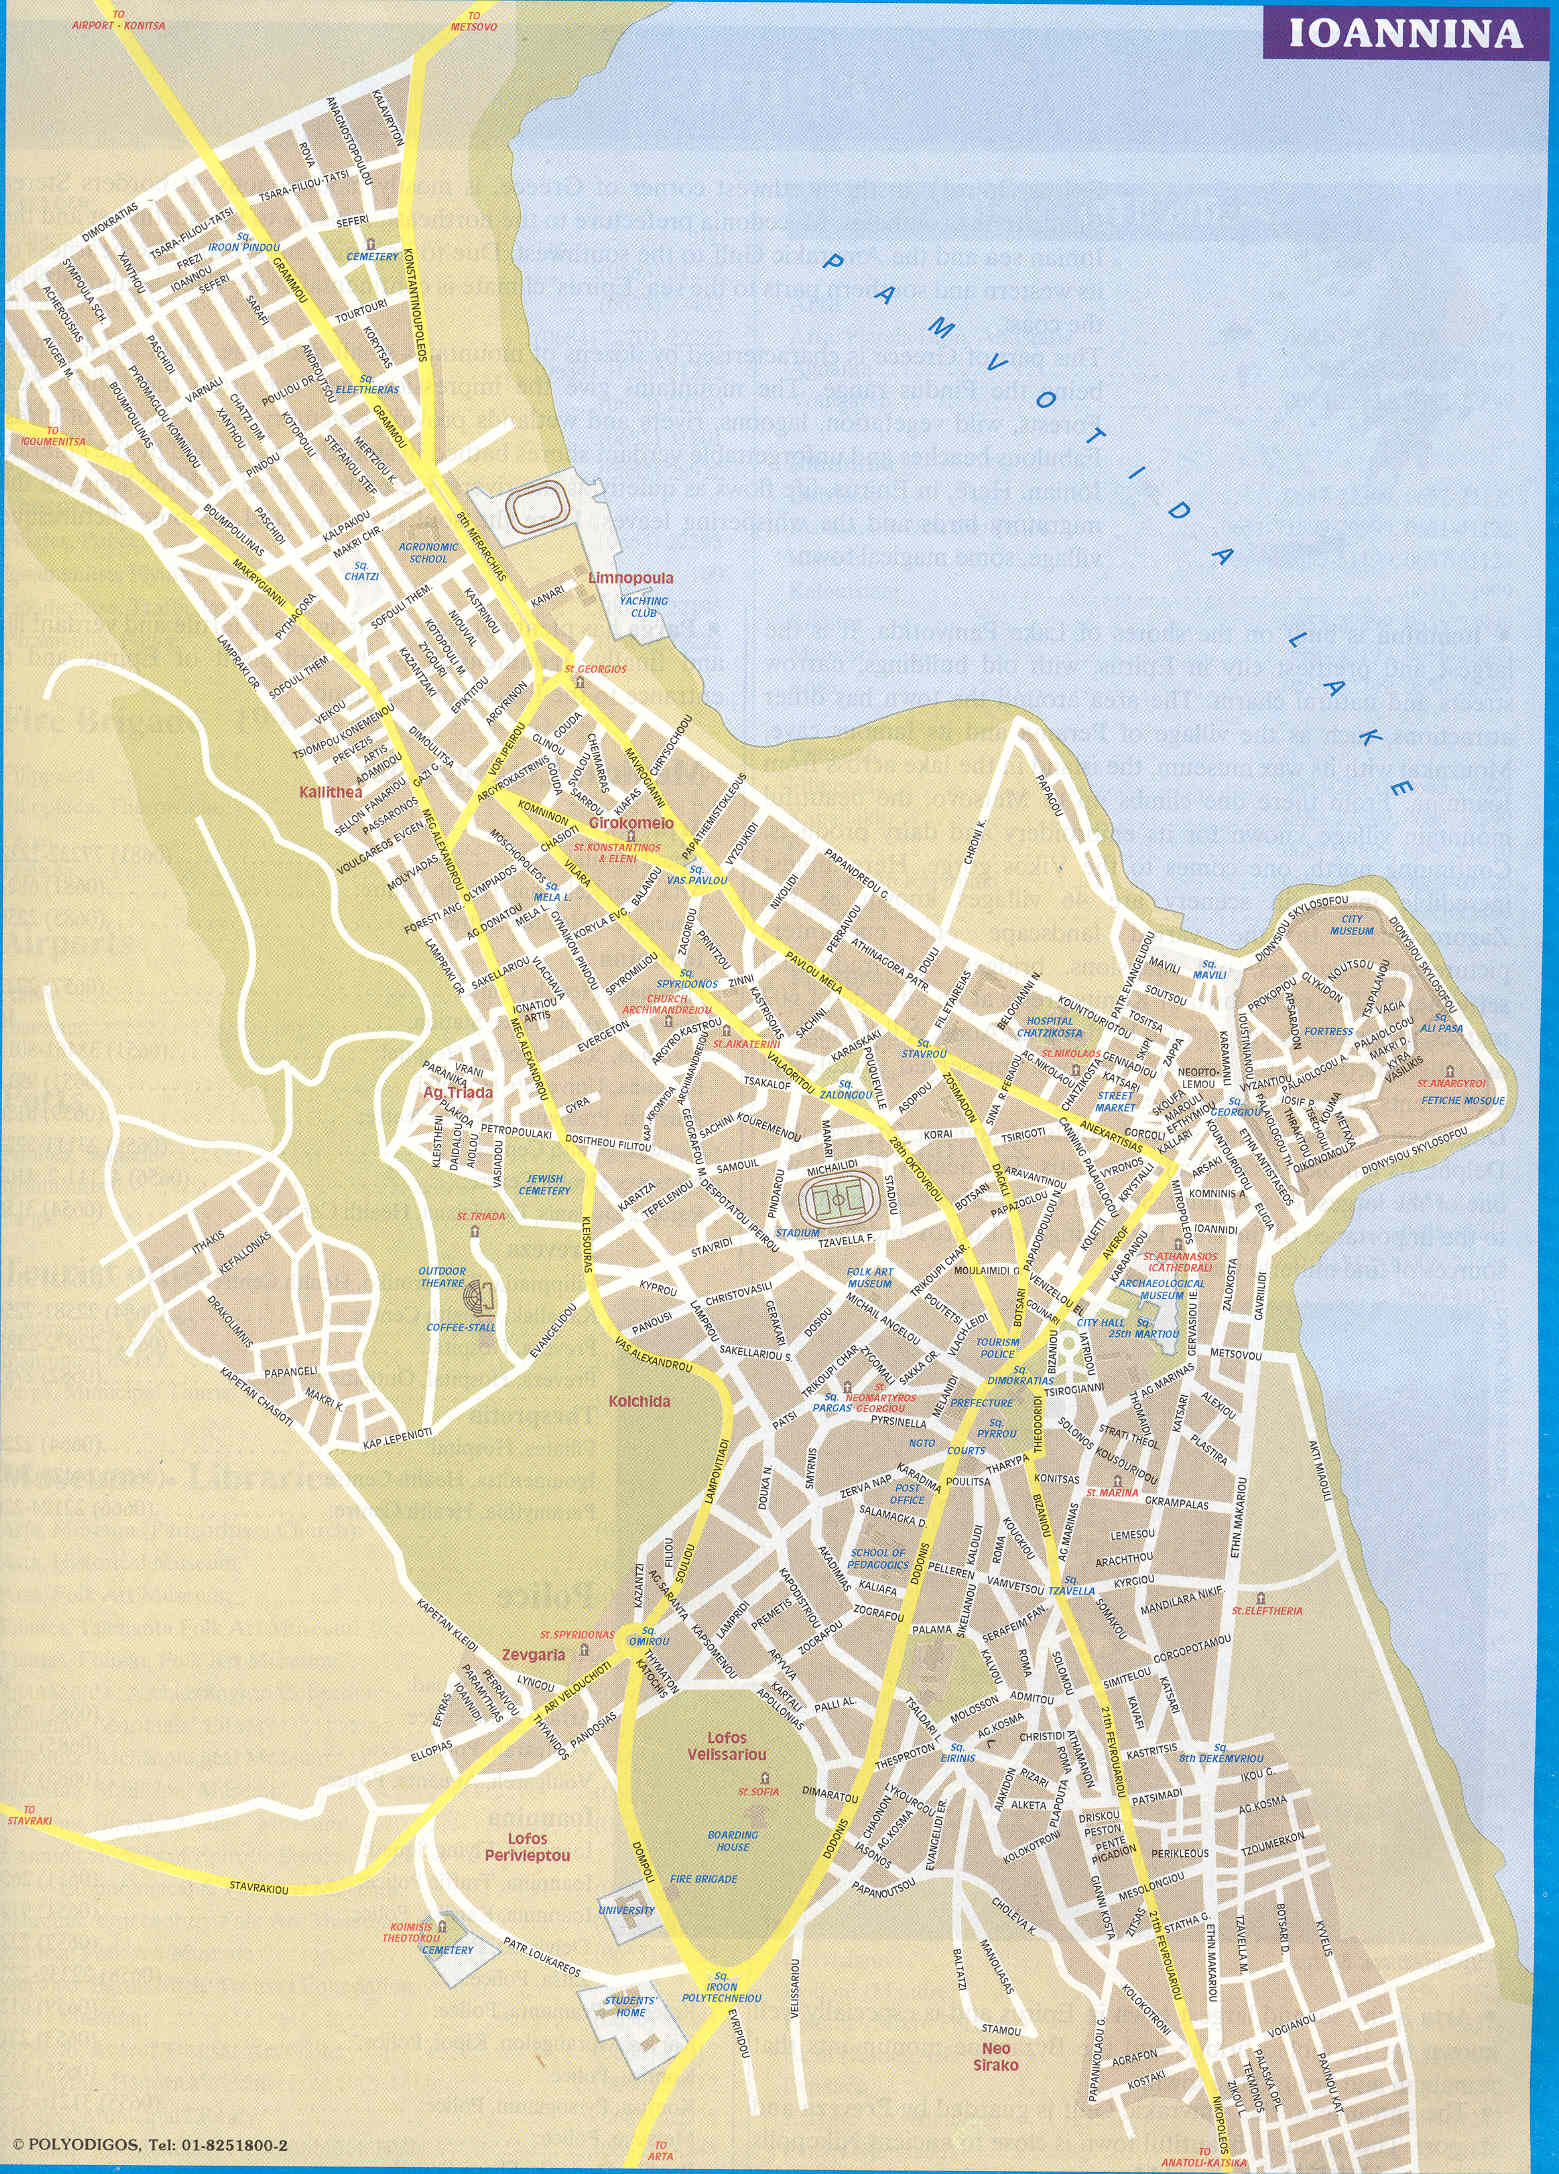 Ioannina tourist map